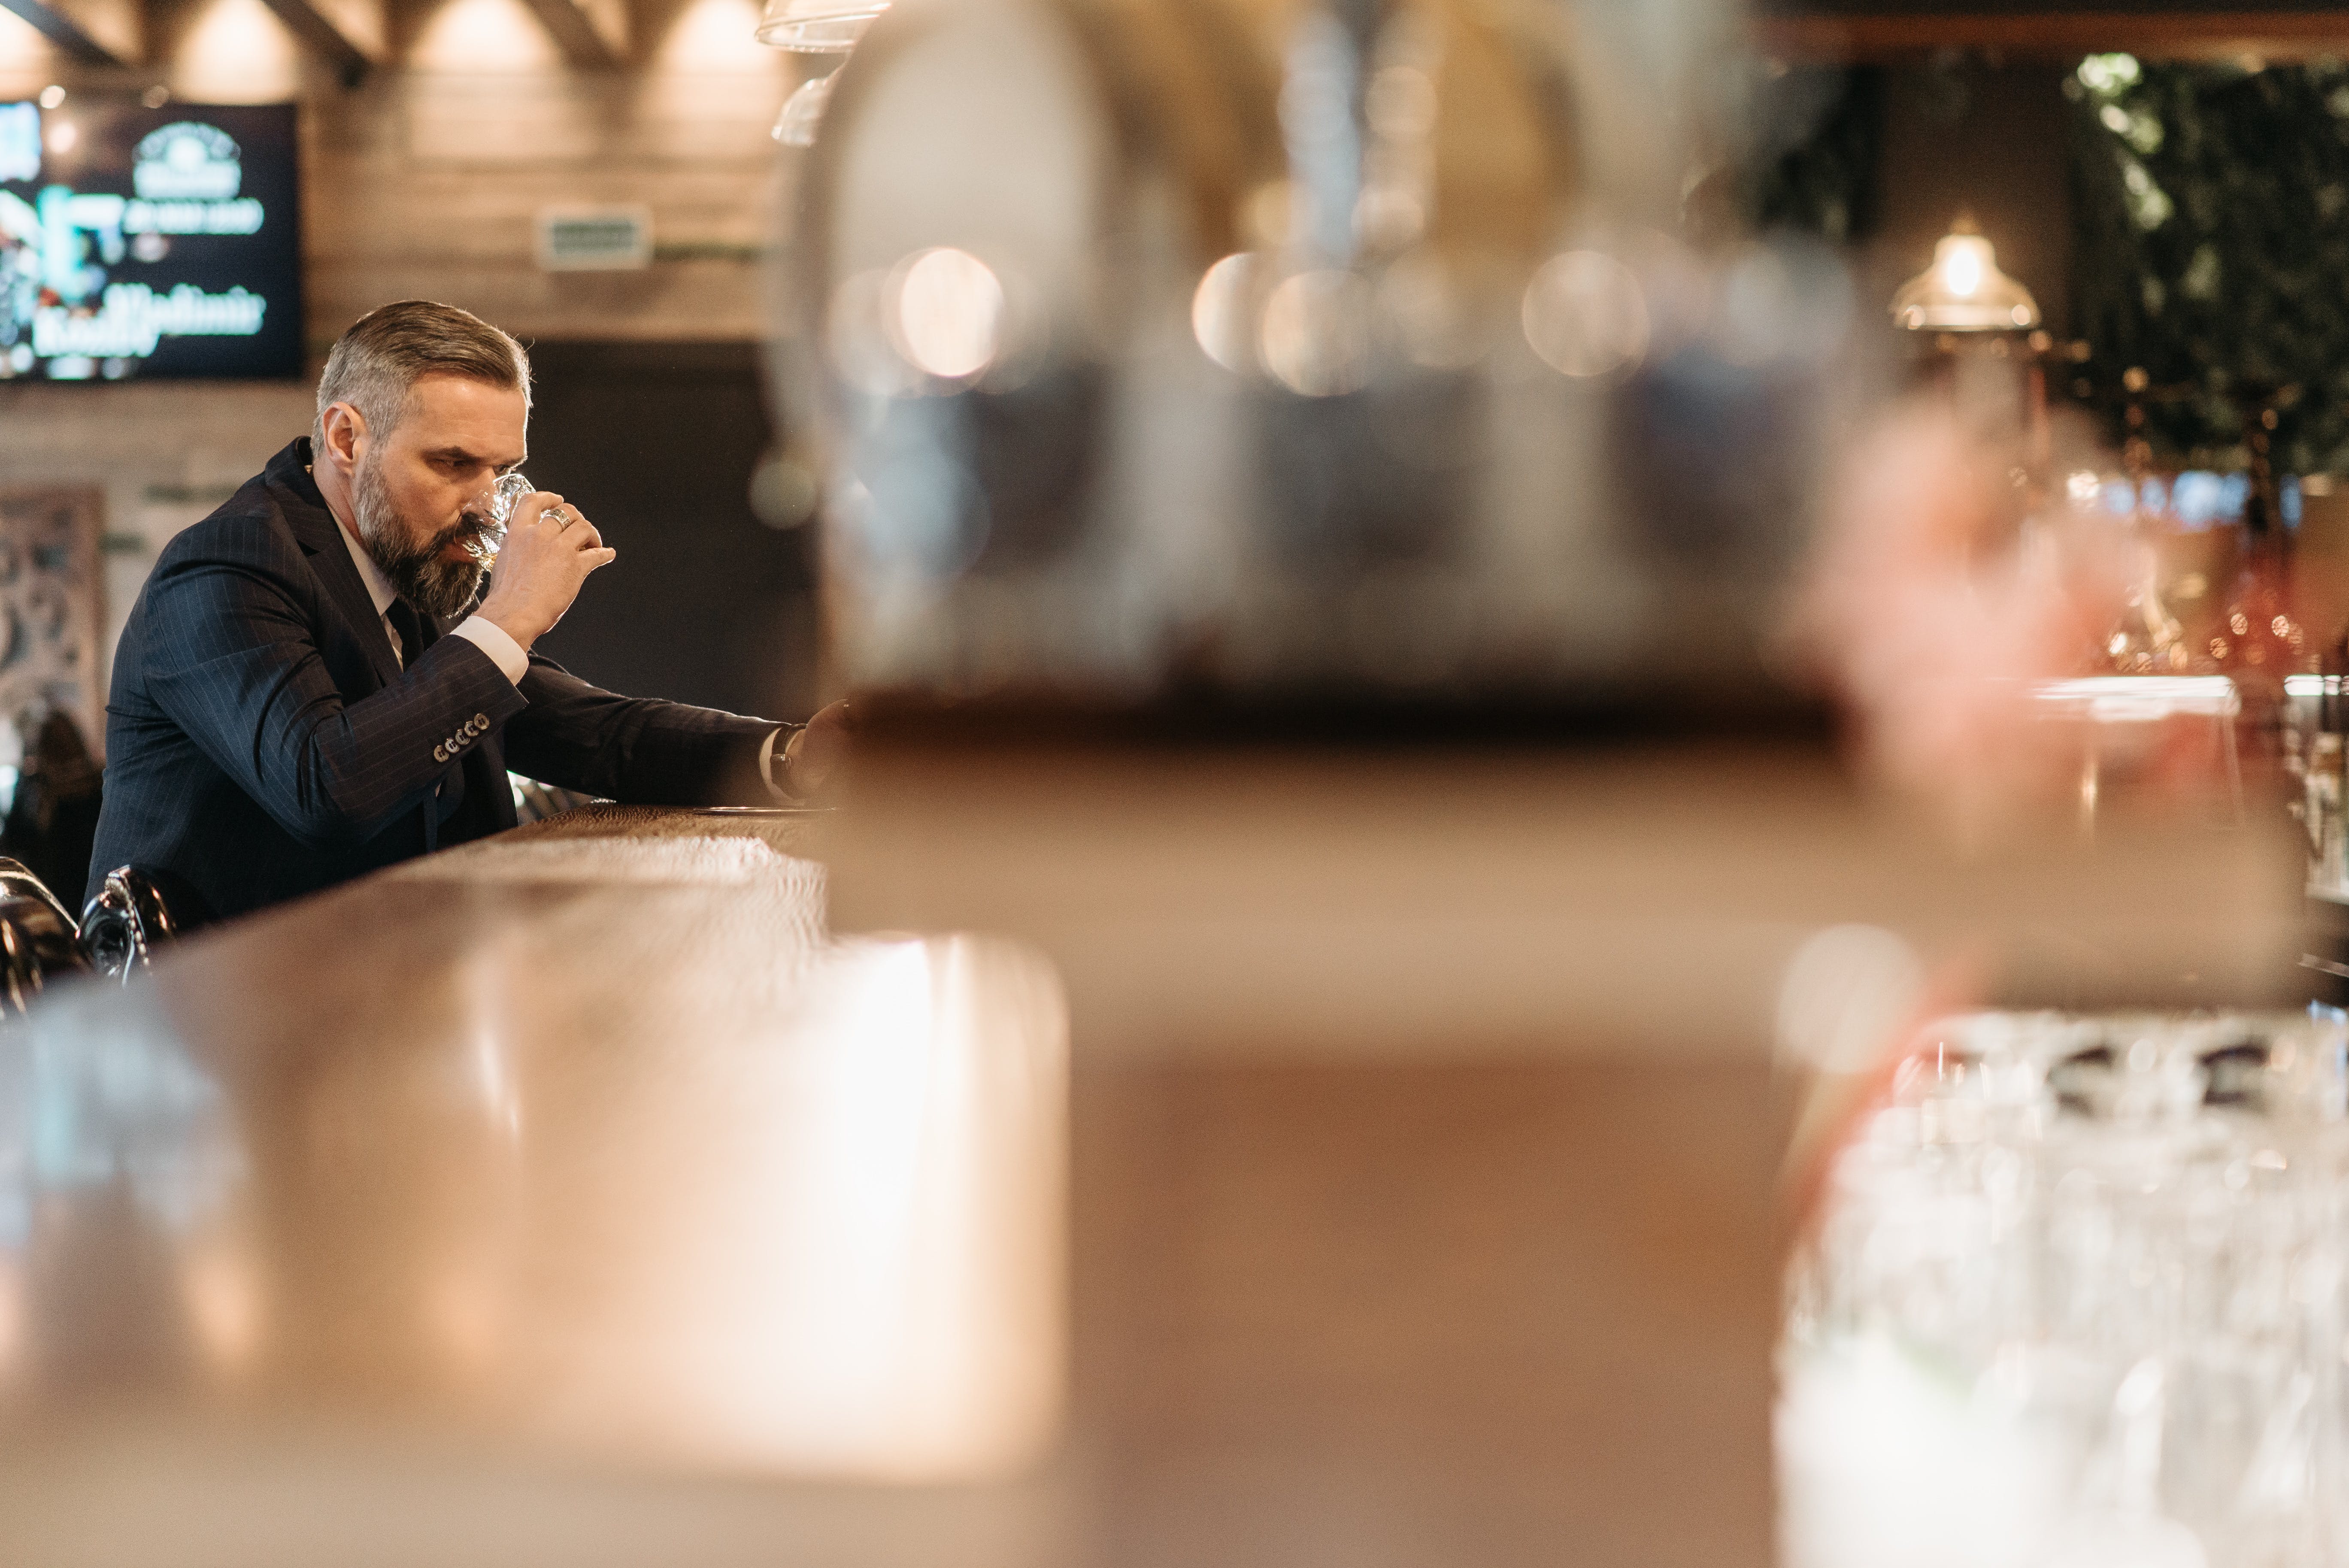 Ein älterer Mann bei einem Drink in einer Bar | Quelle: Pexels